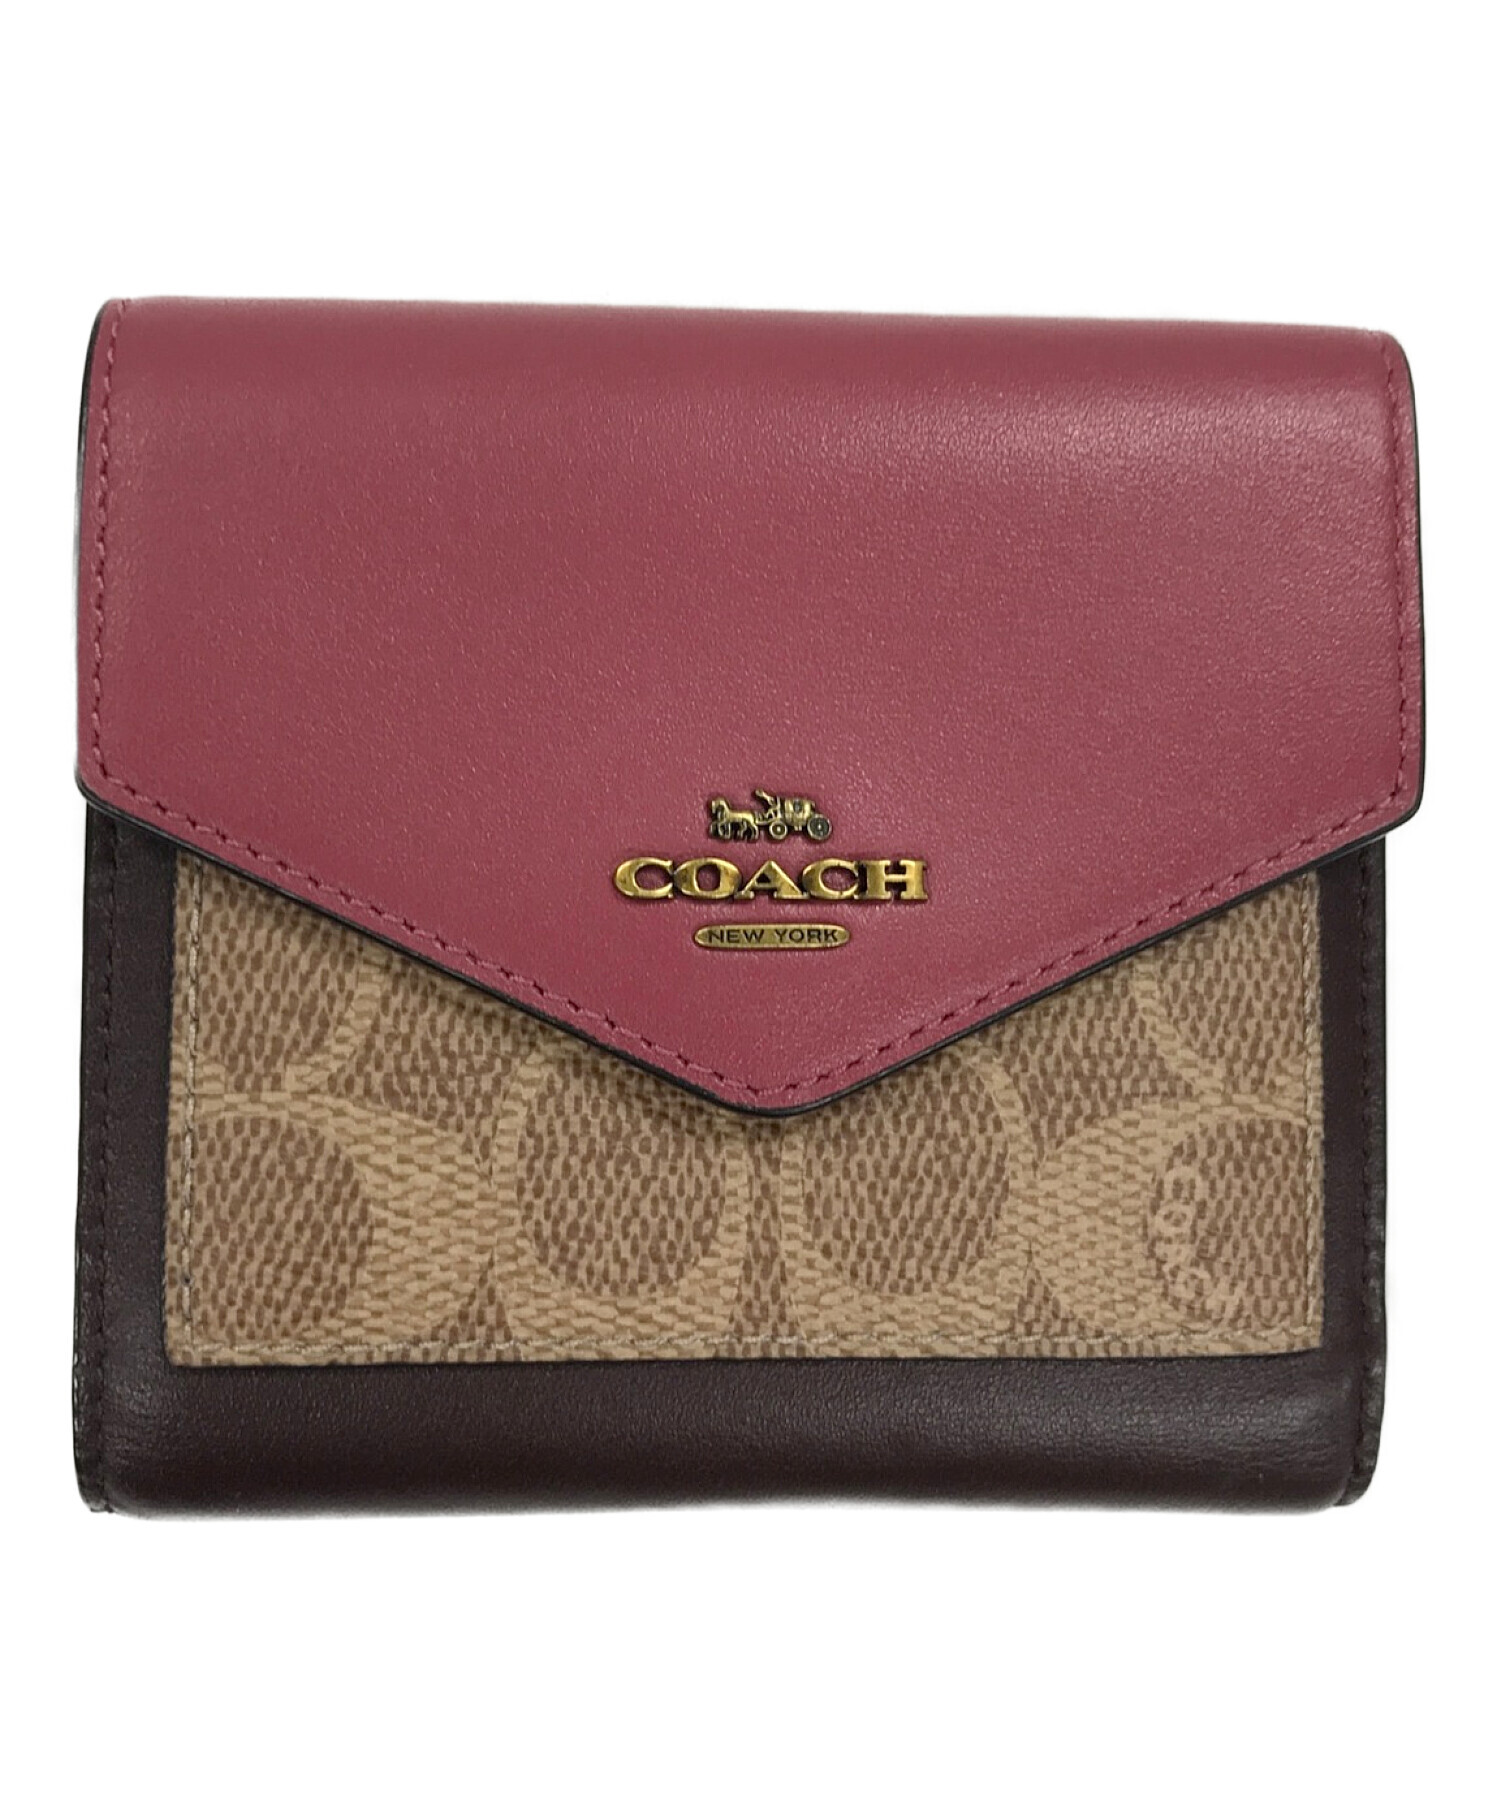 COACH (コーチ) 3つ折り財布 ピンク×ブラウン サイズ:実寸サイズにてご確認ください。